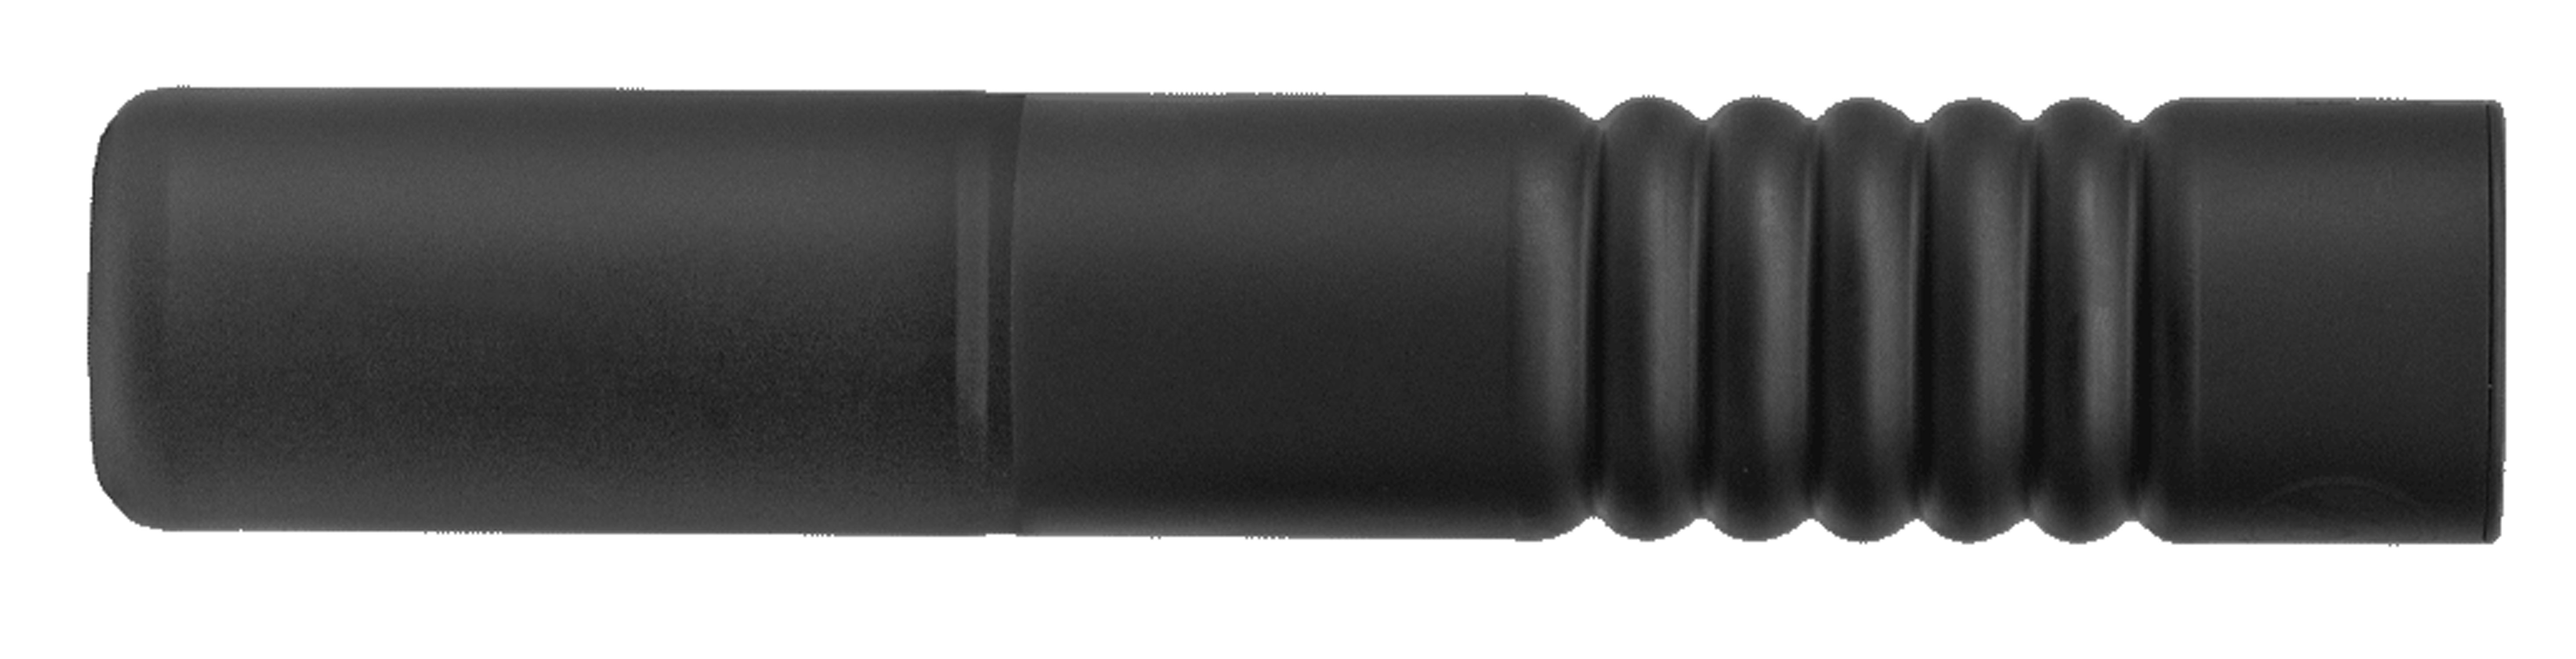 CZ-USA 90507 Ti Reflex  7.62mm 1.63